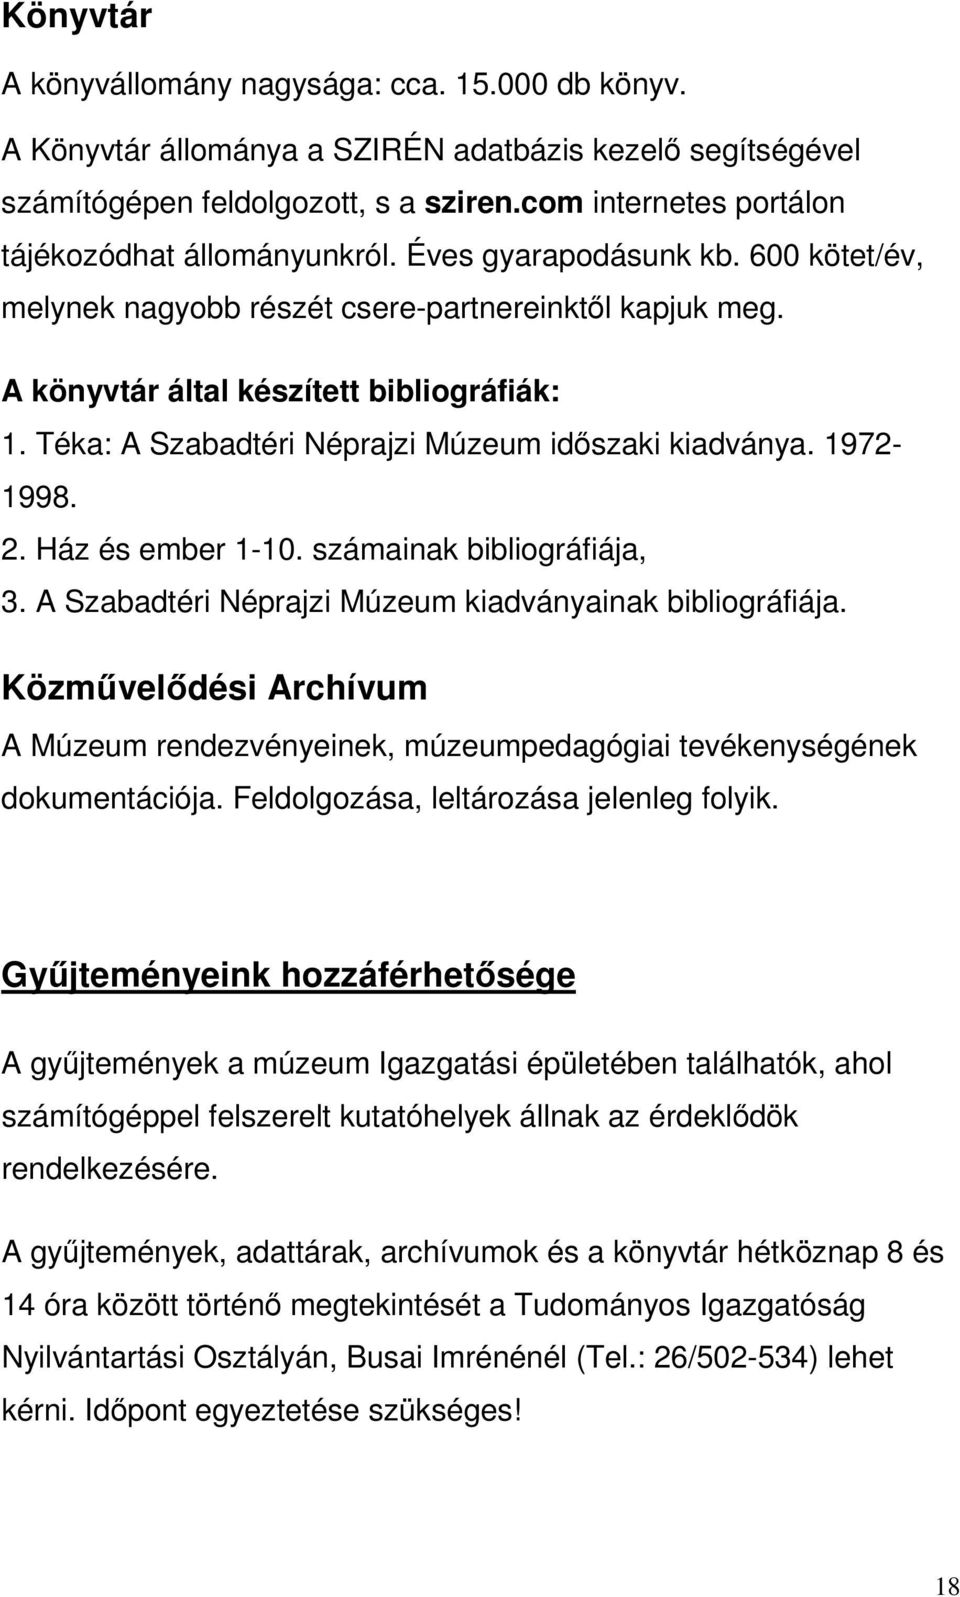 Téka: A Szabadtéri Néprajzi Múzeum idıszaki kiadványa. 1972-1998. 2. Ház és ember 1-10. számainak bibliográfiája, 3. A Szabadtéri Néprajzi Múzeum kiadványainak bibliográfiája.